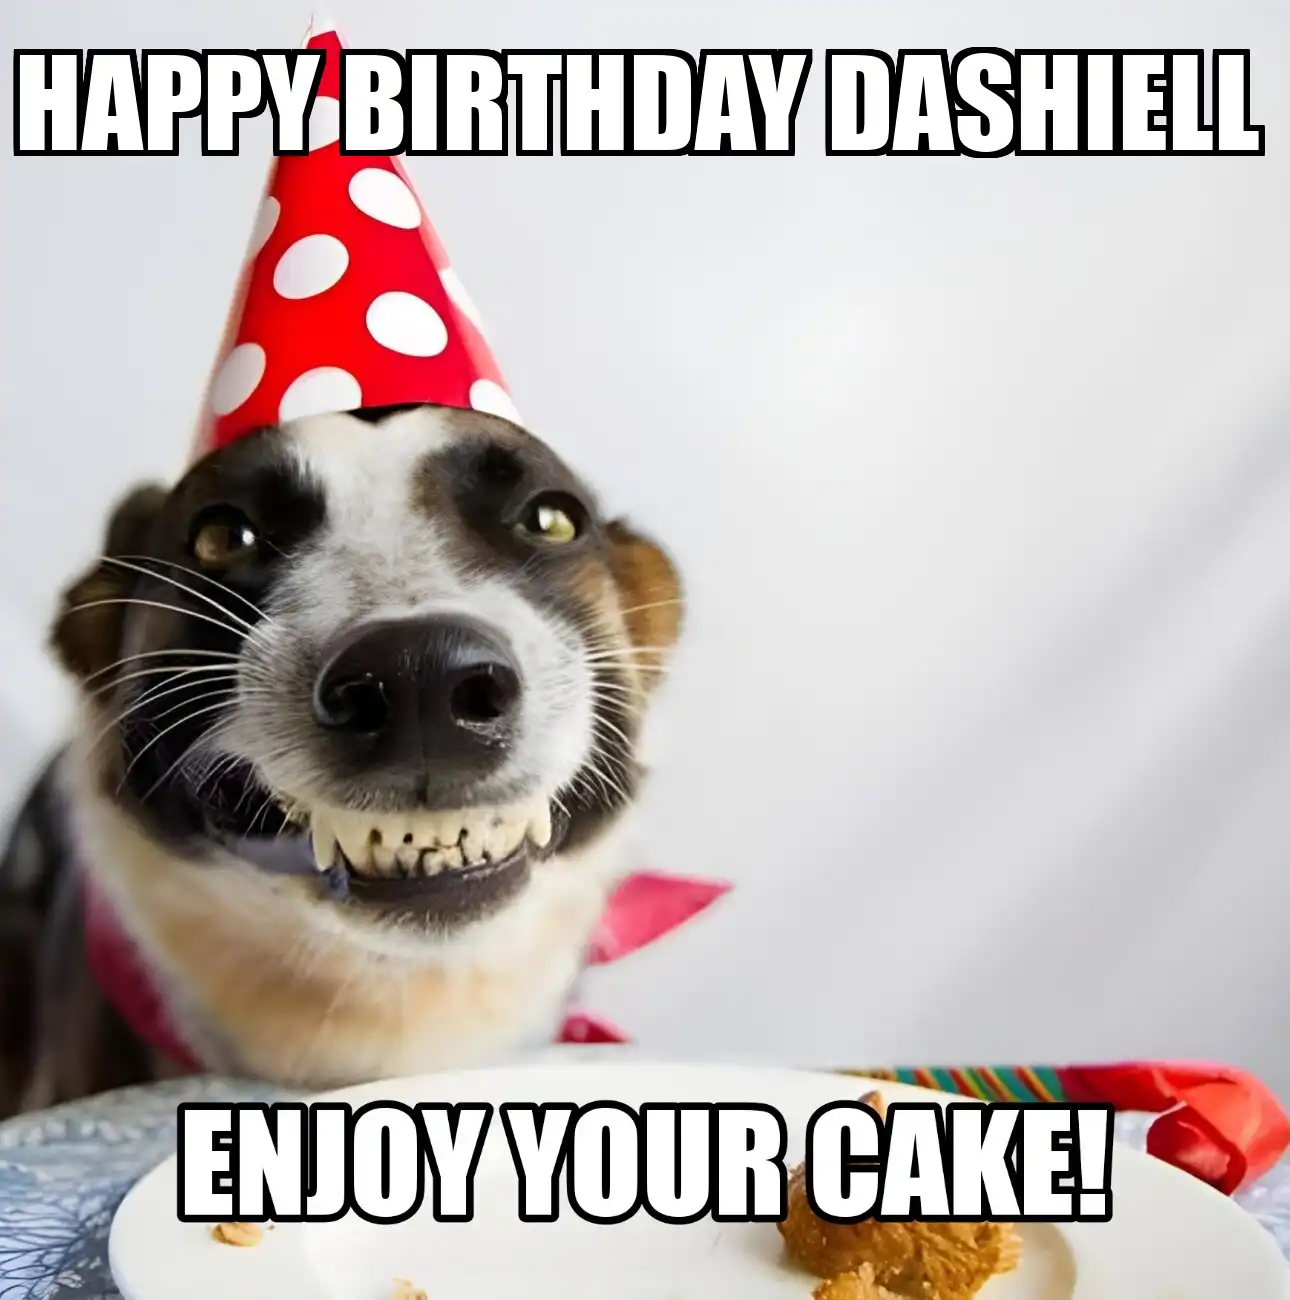 Happy Birthday Dashiell Enjoy Your Cake Dog Meme